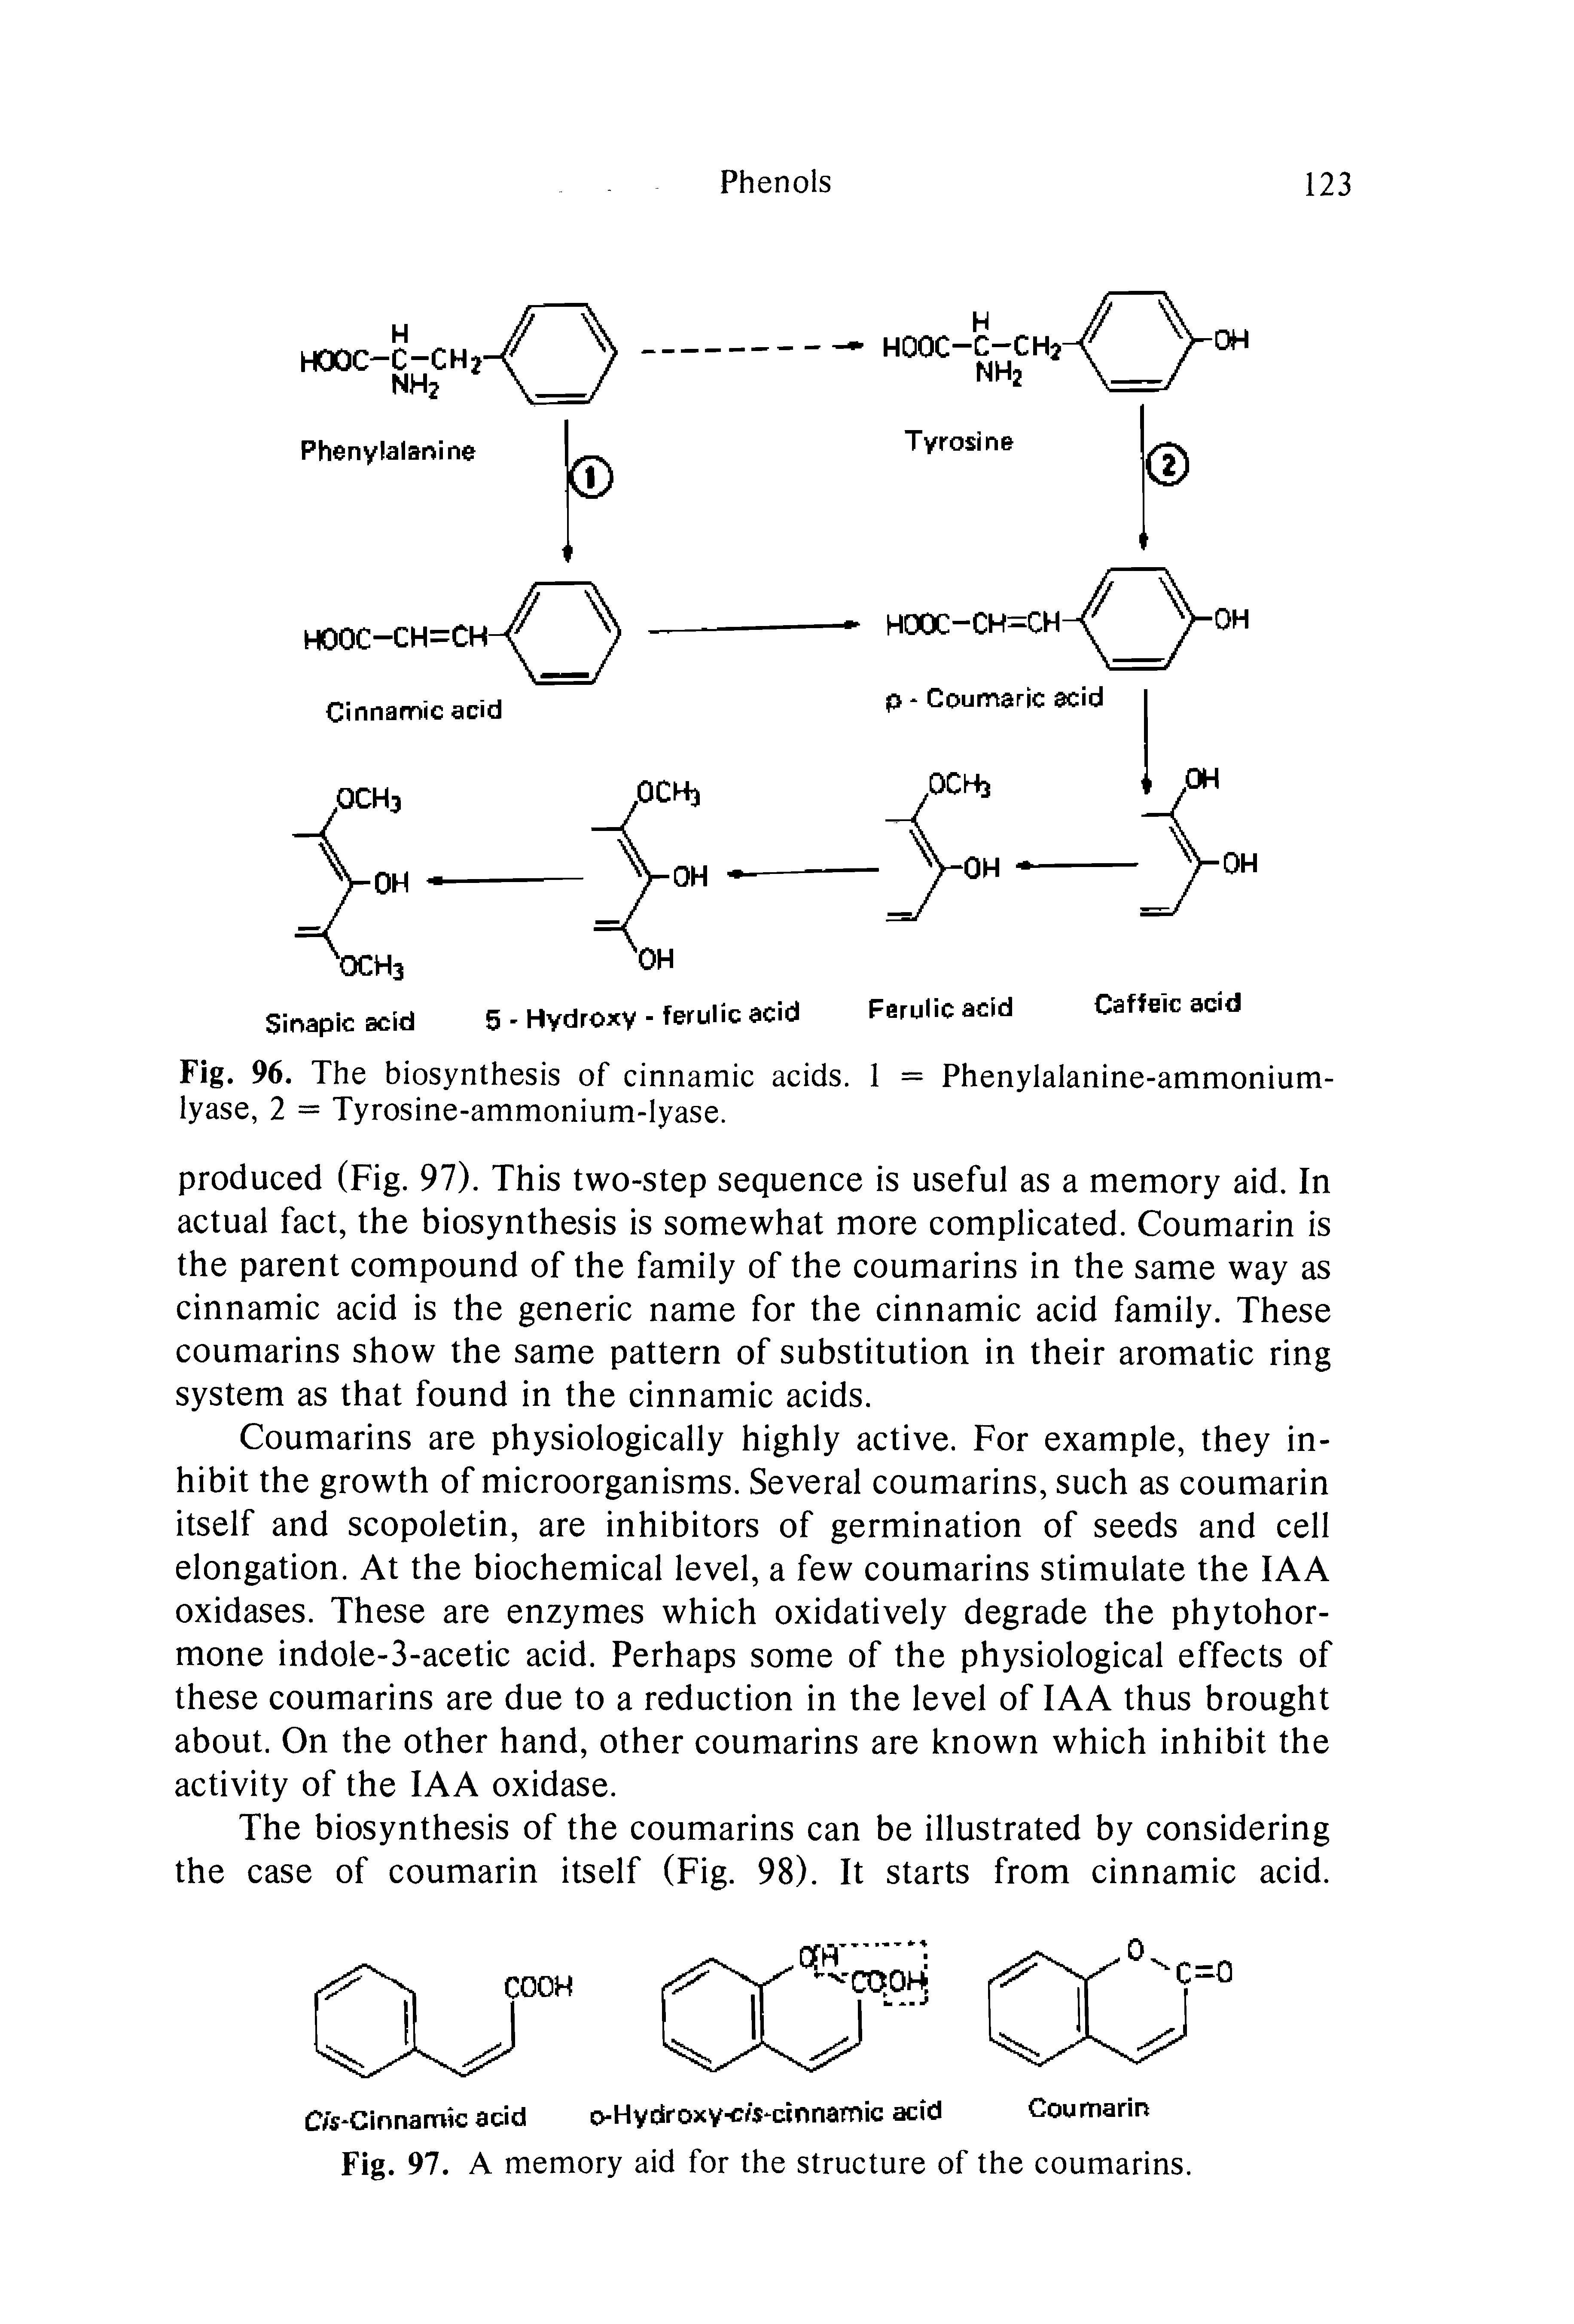 Fig. 96. The biosynthesis of cinnamic acids. 1 = Phenylalanine-ammonium-lyase, 2 = Tyrosine-ammonium-lyase.